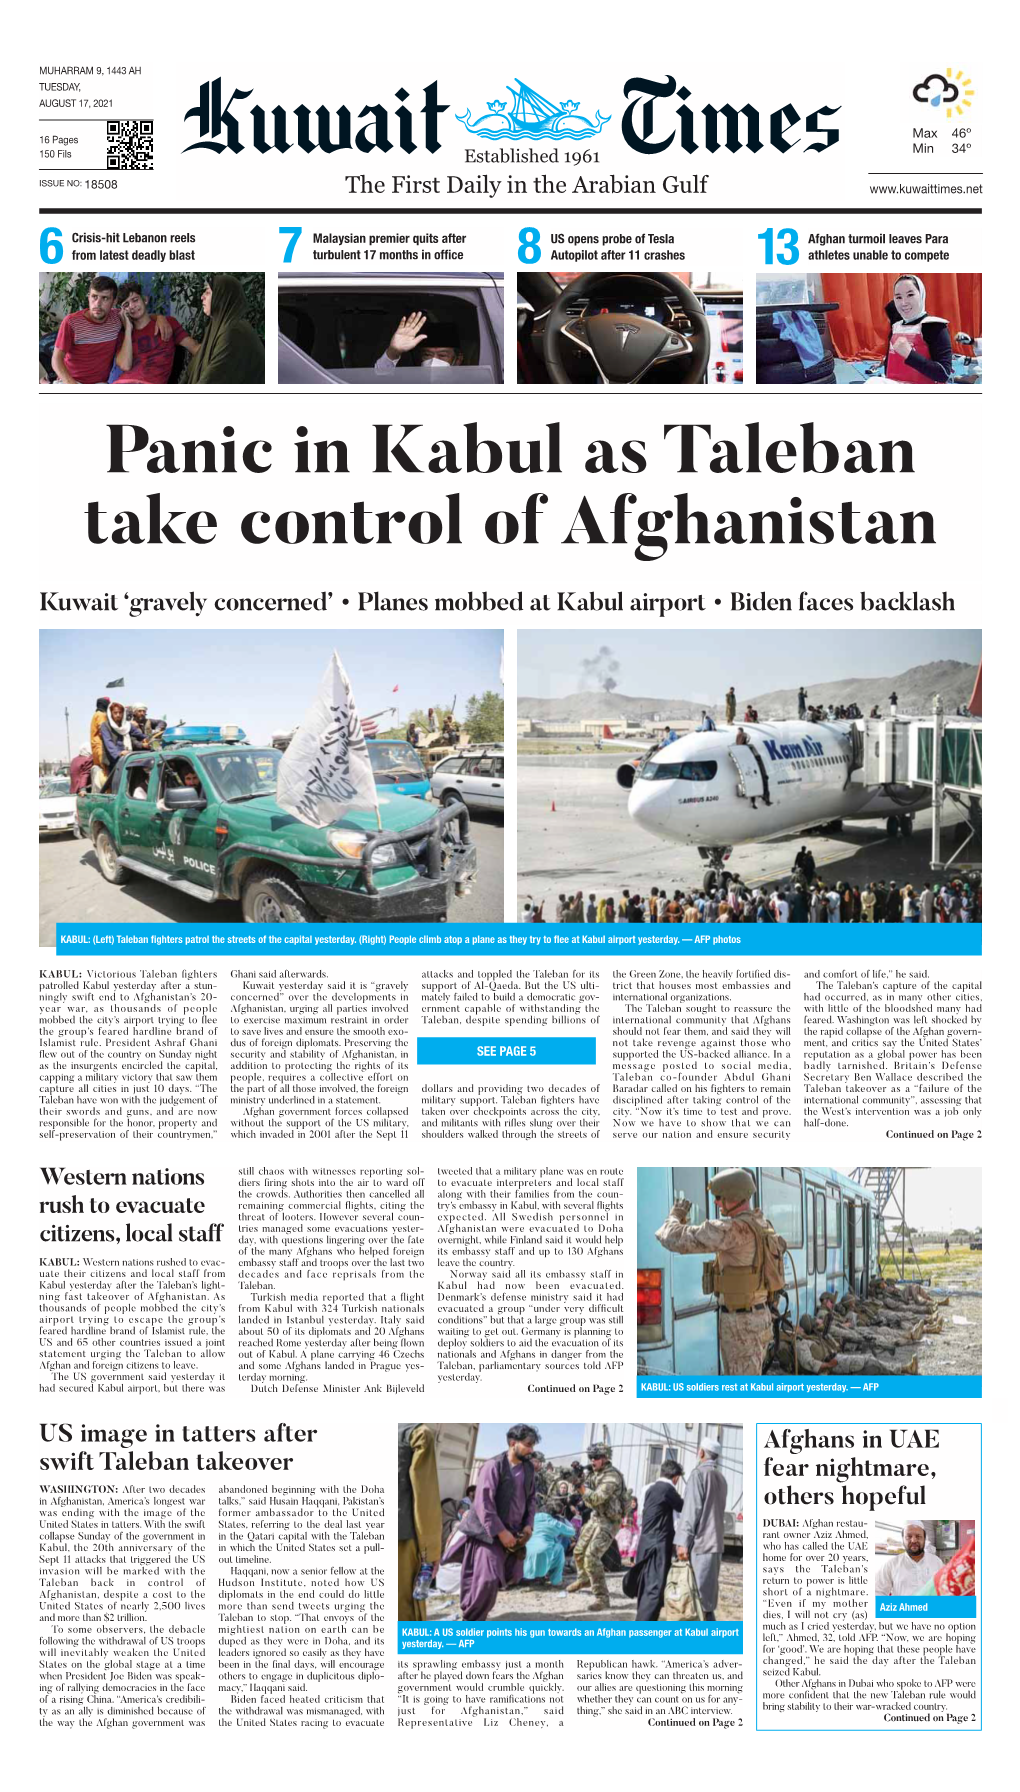 Panic in Kabul As Taleban Take Control of Afghanistan